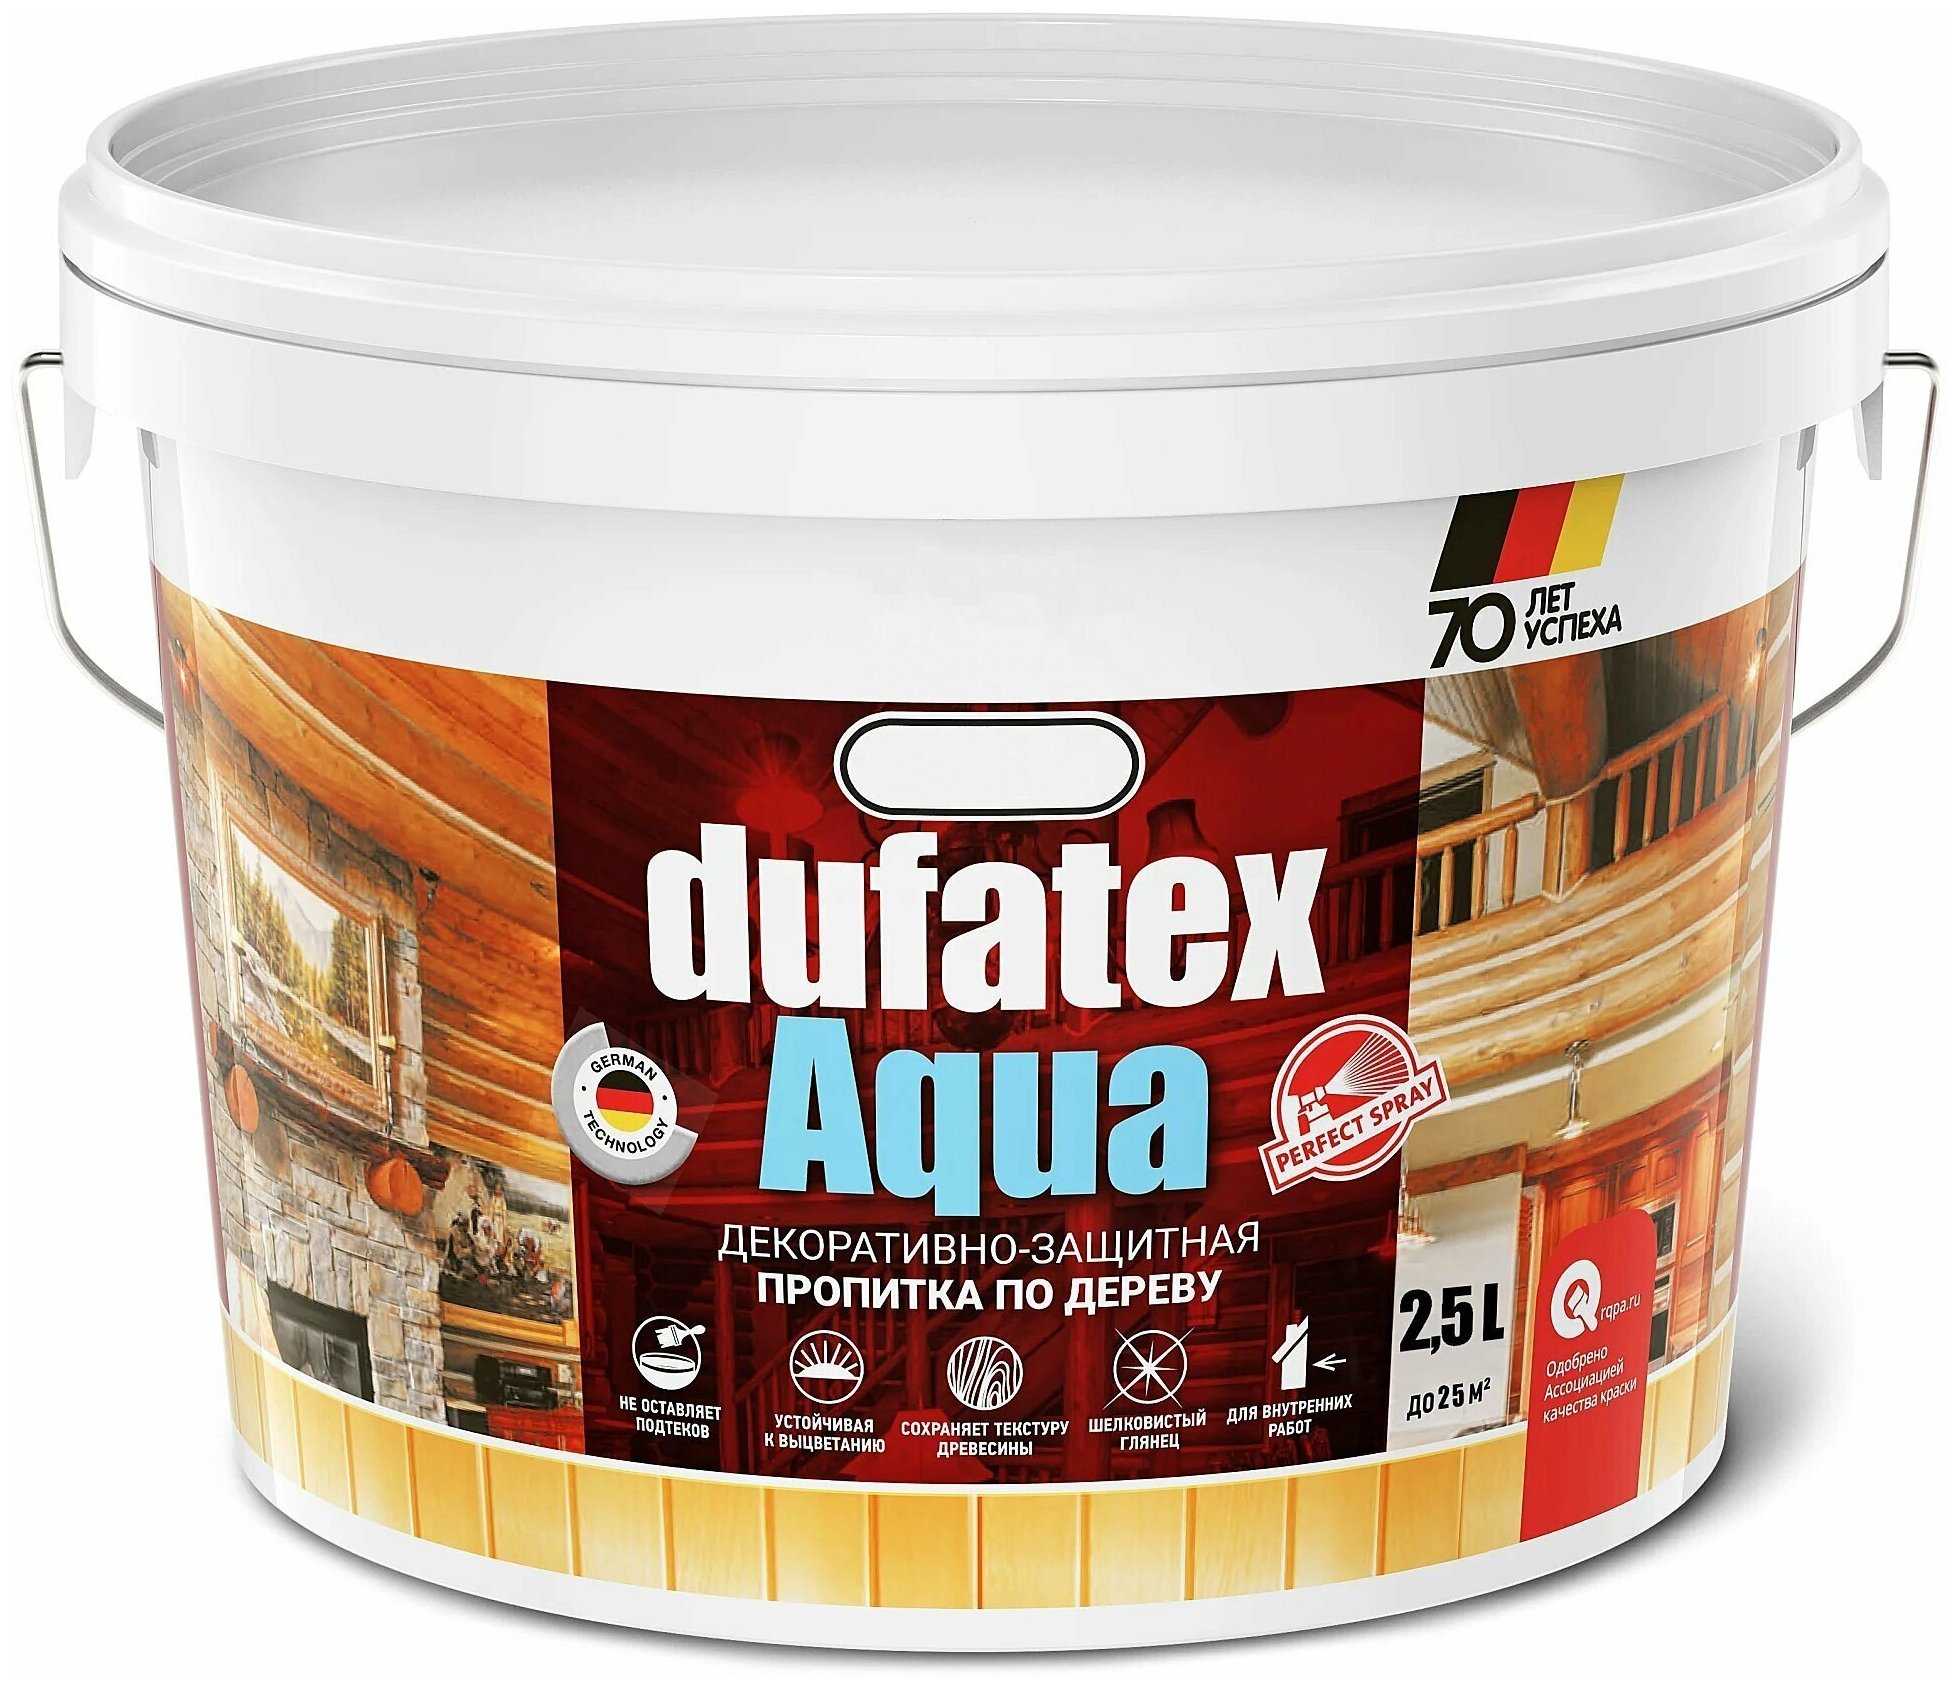 Пропитка для дерева водная прозрачная Dufatex aqua 2.5л для защиты от воздействия воды, солнечных лучей и иных погодных условий на постройки из дерева